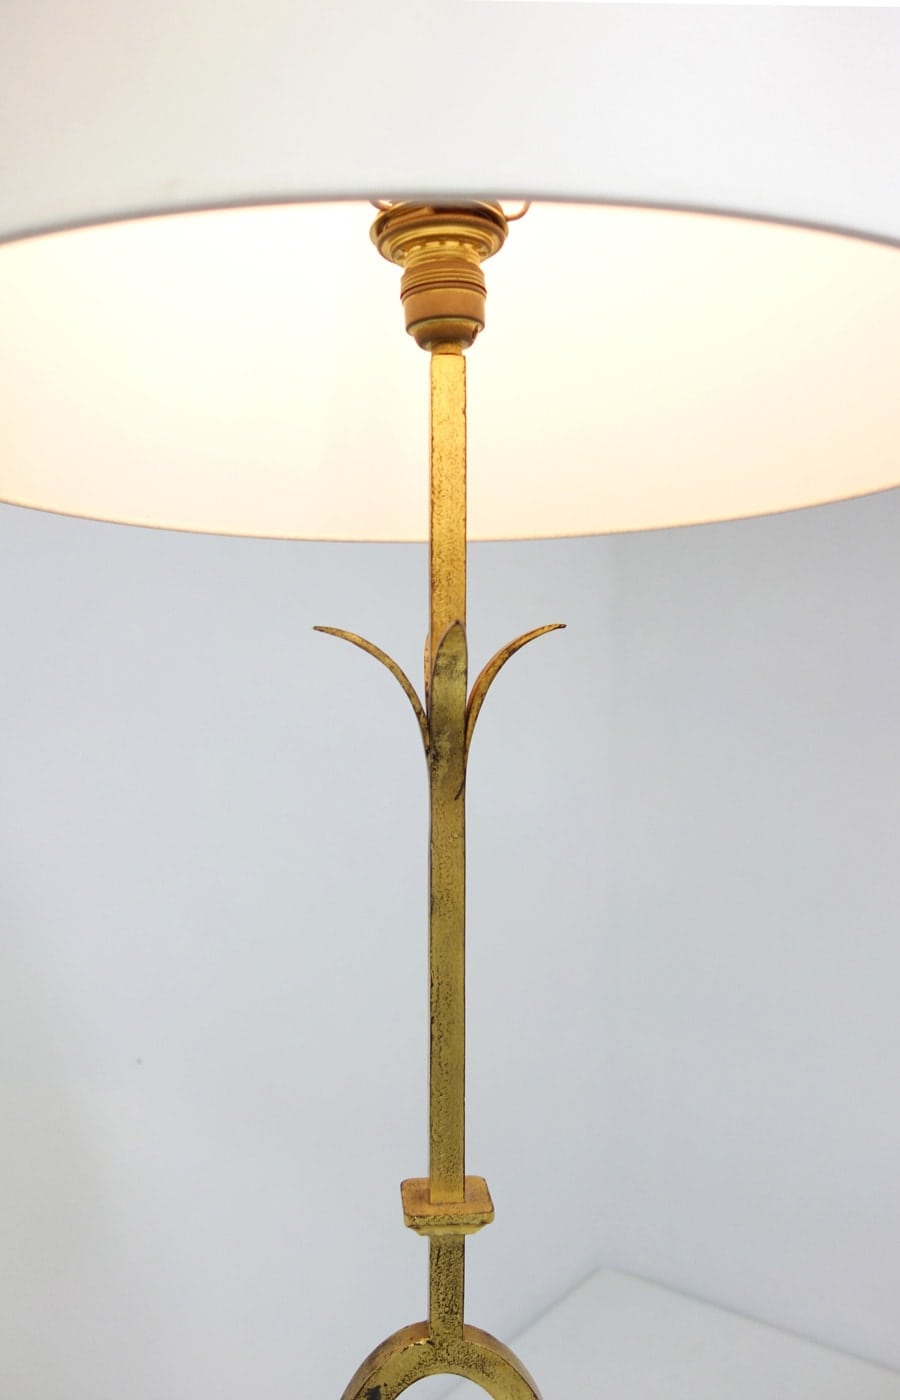 Gilbert Poillerat, Gilt wrought iron floor lamp, vue 01